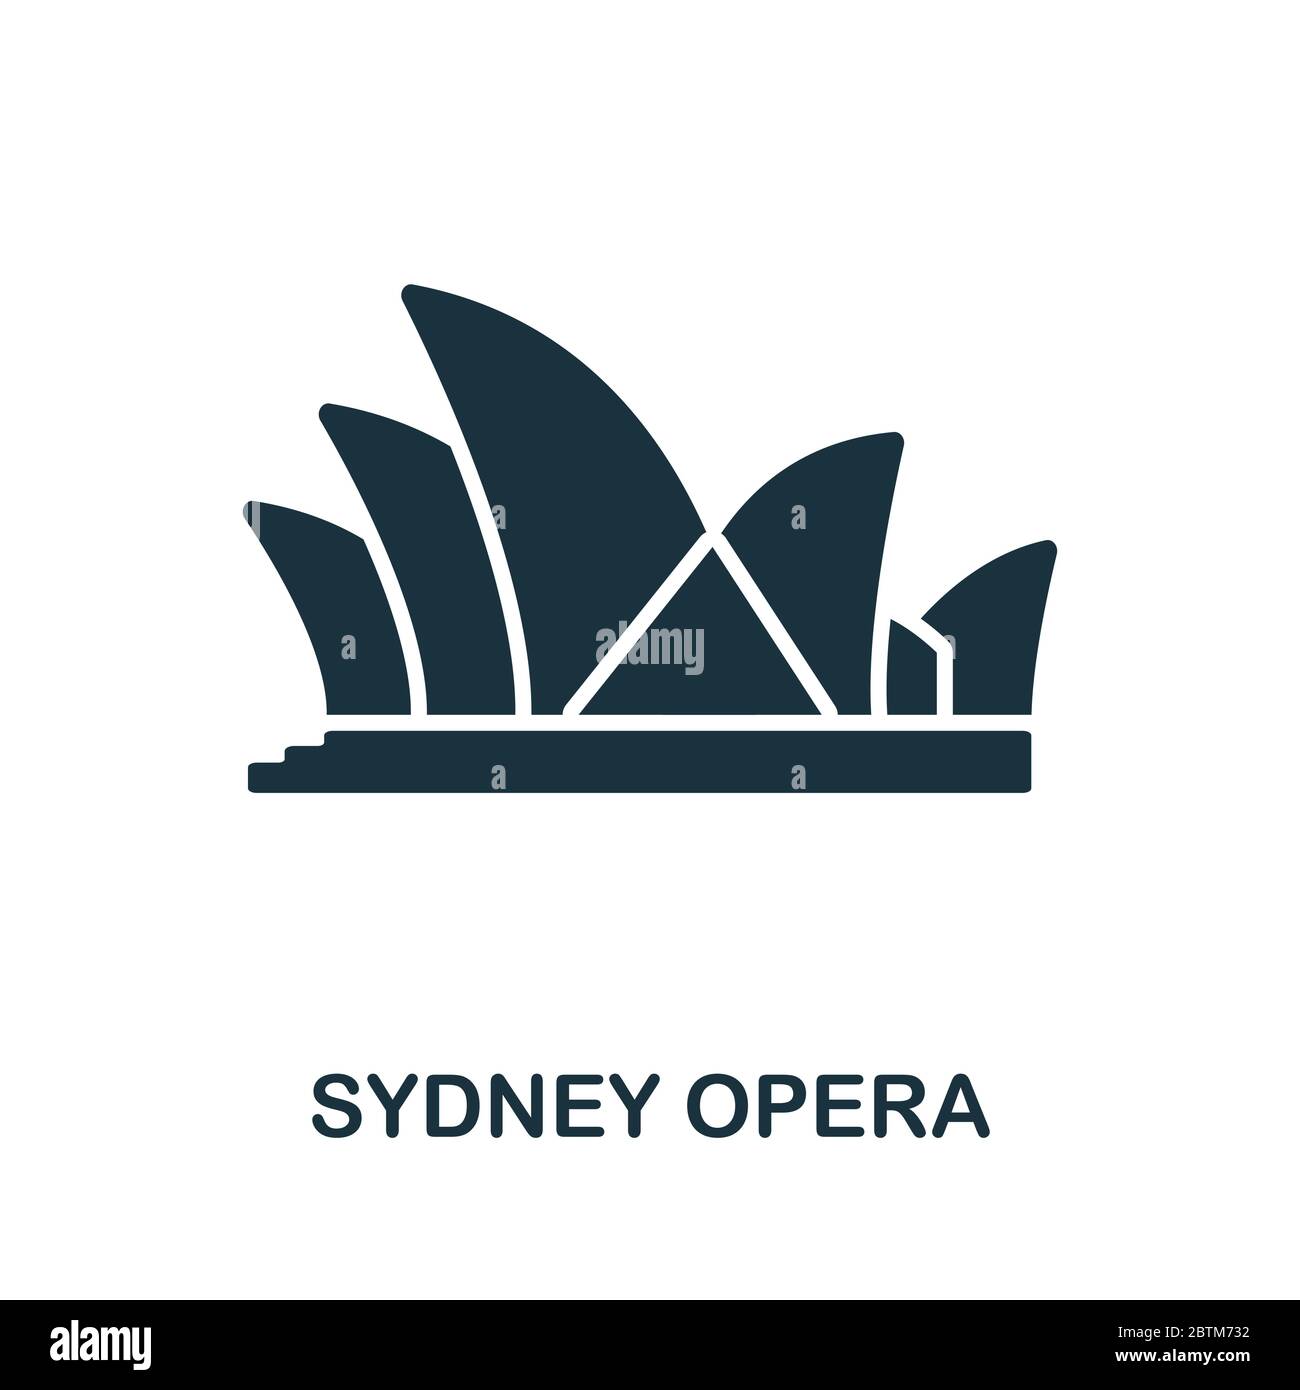 Sydney Opera Ikone aus australien Kollektion. Einfache Linie Sydney Opera Symbol für Vorlagen, Web-Design und Infografiken Stock Vektor